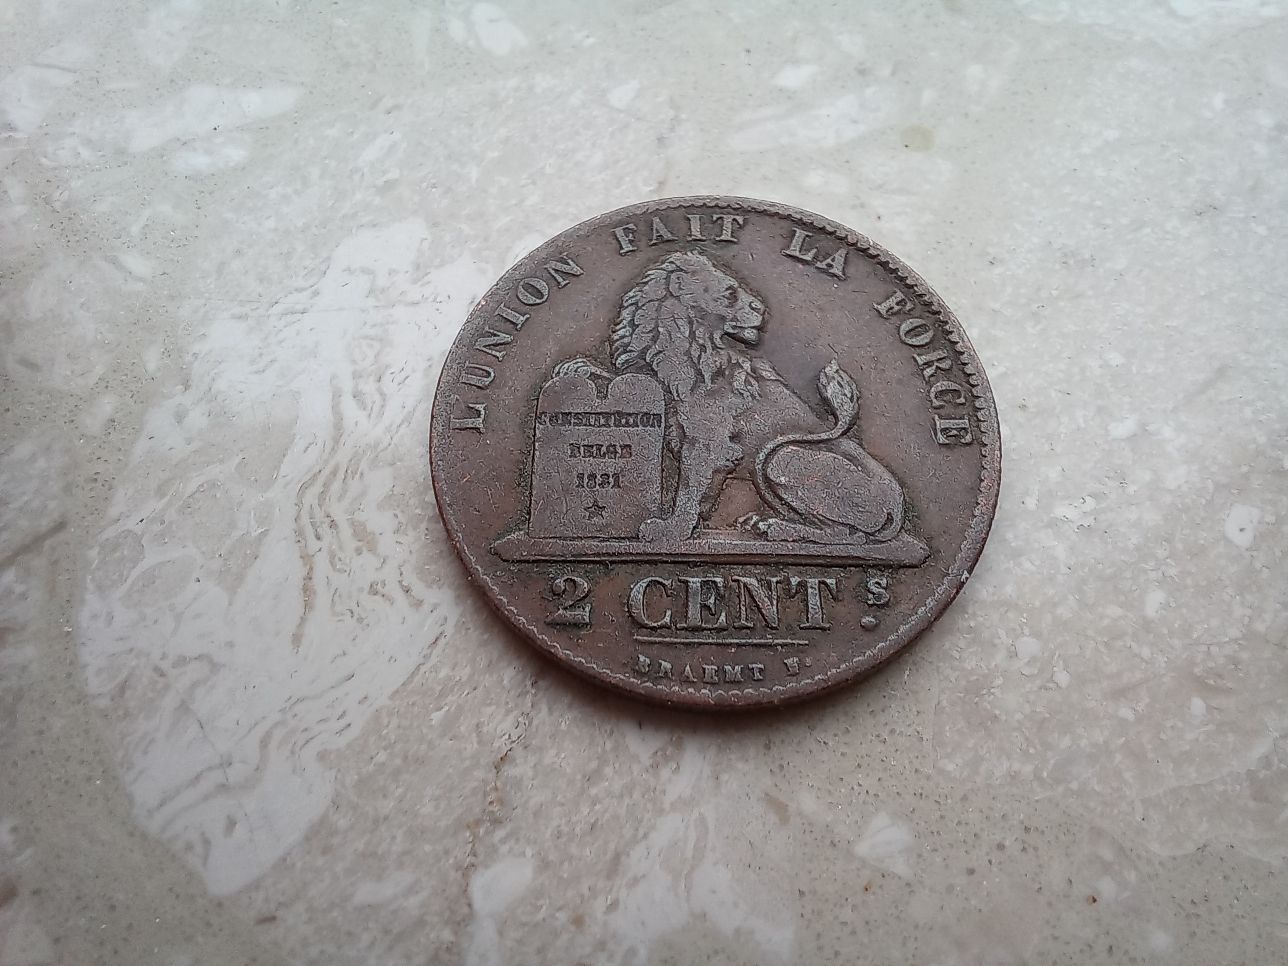 Belgia - 2 monety obiegowe z czasów Króla Leopolda I